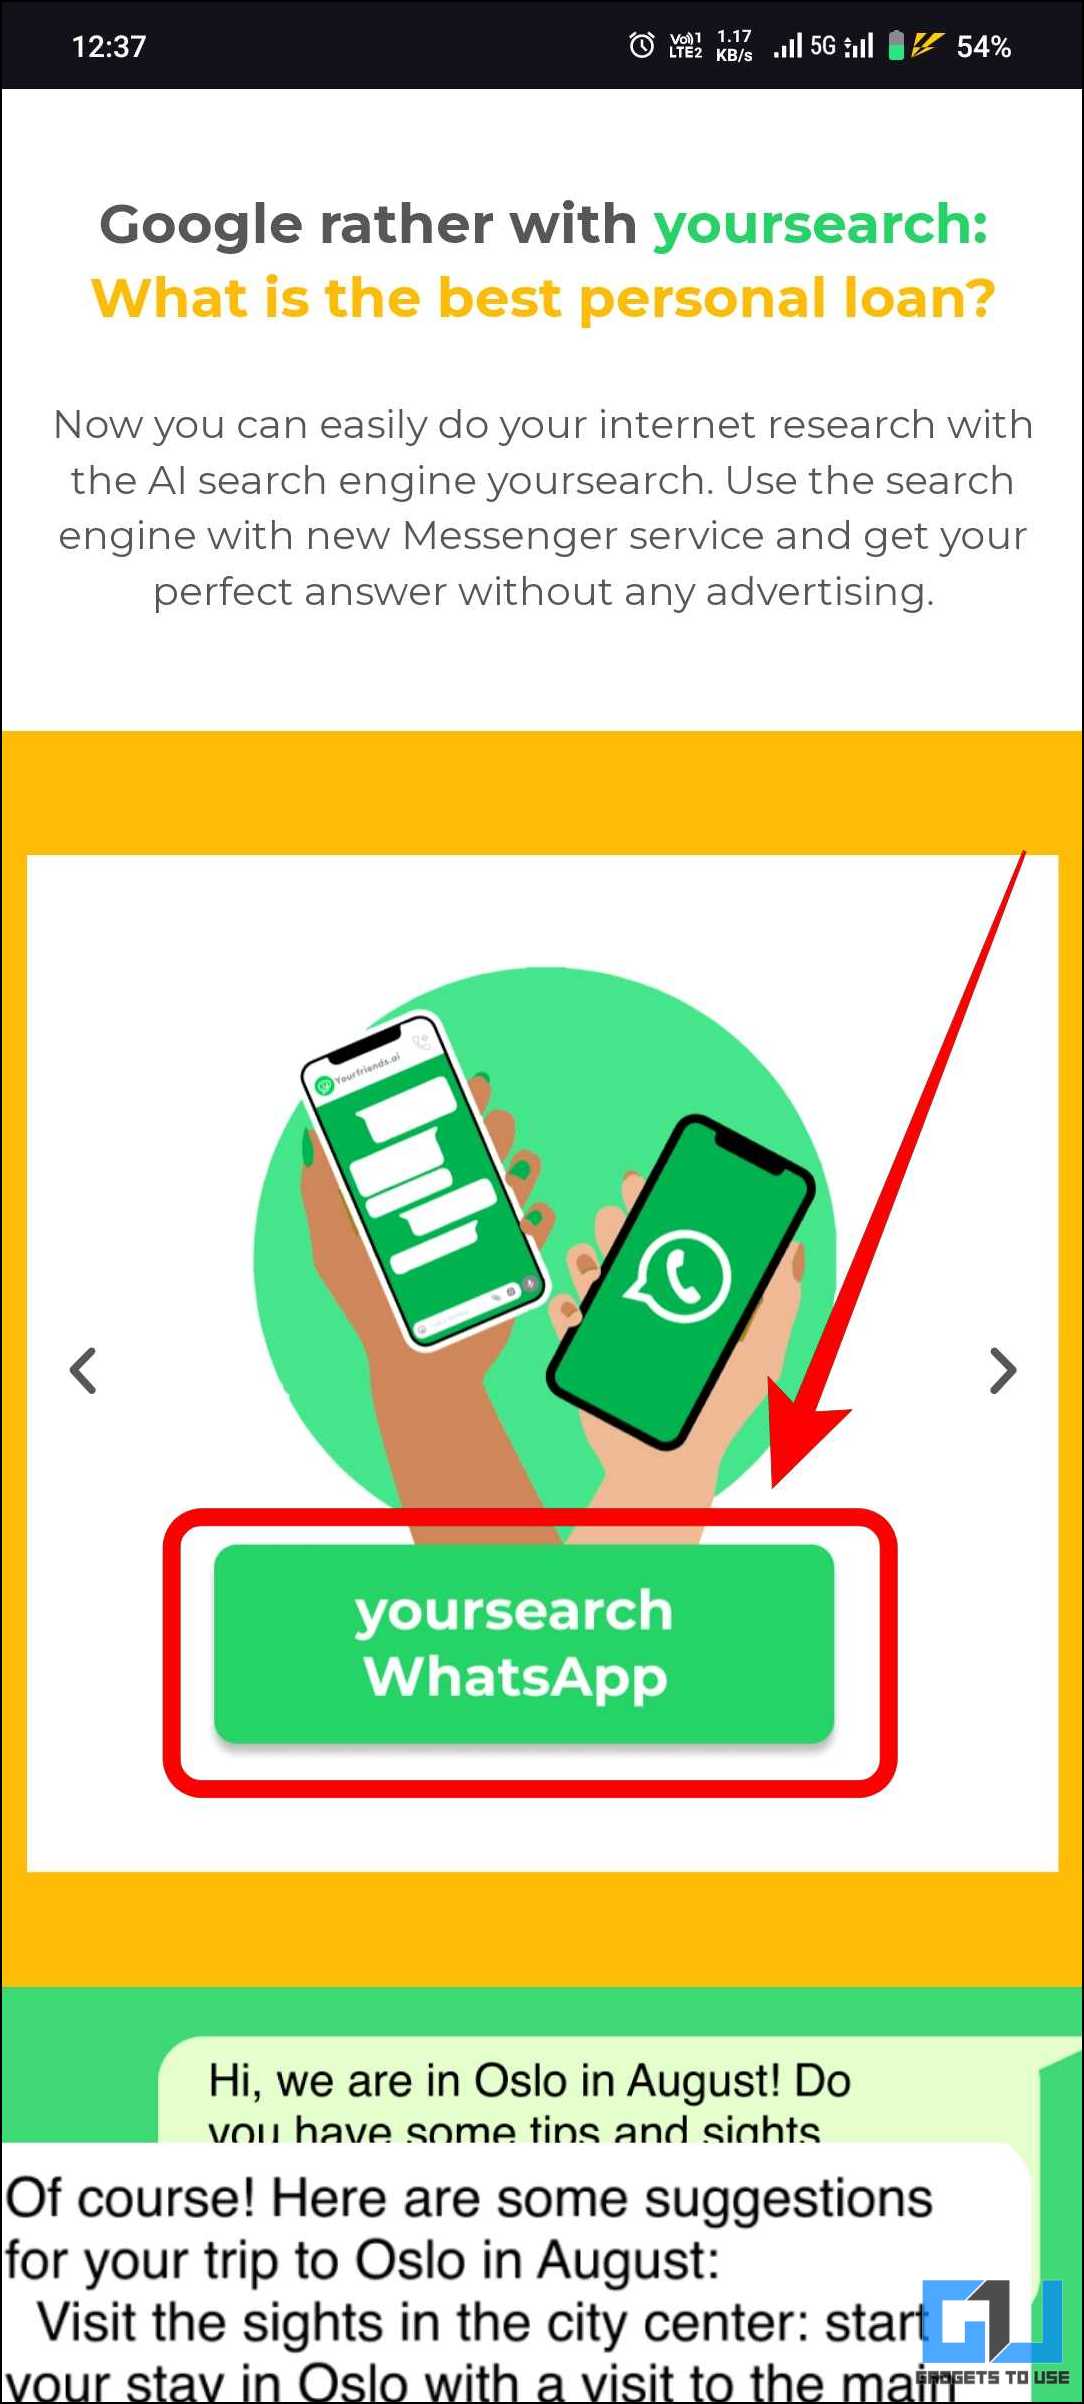 Yoursearch WhatsApp 버튼이 빨간색으로 강조 표시되었습니다.